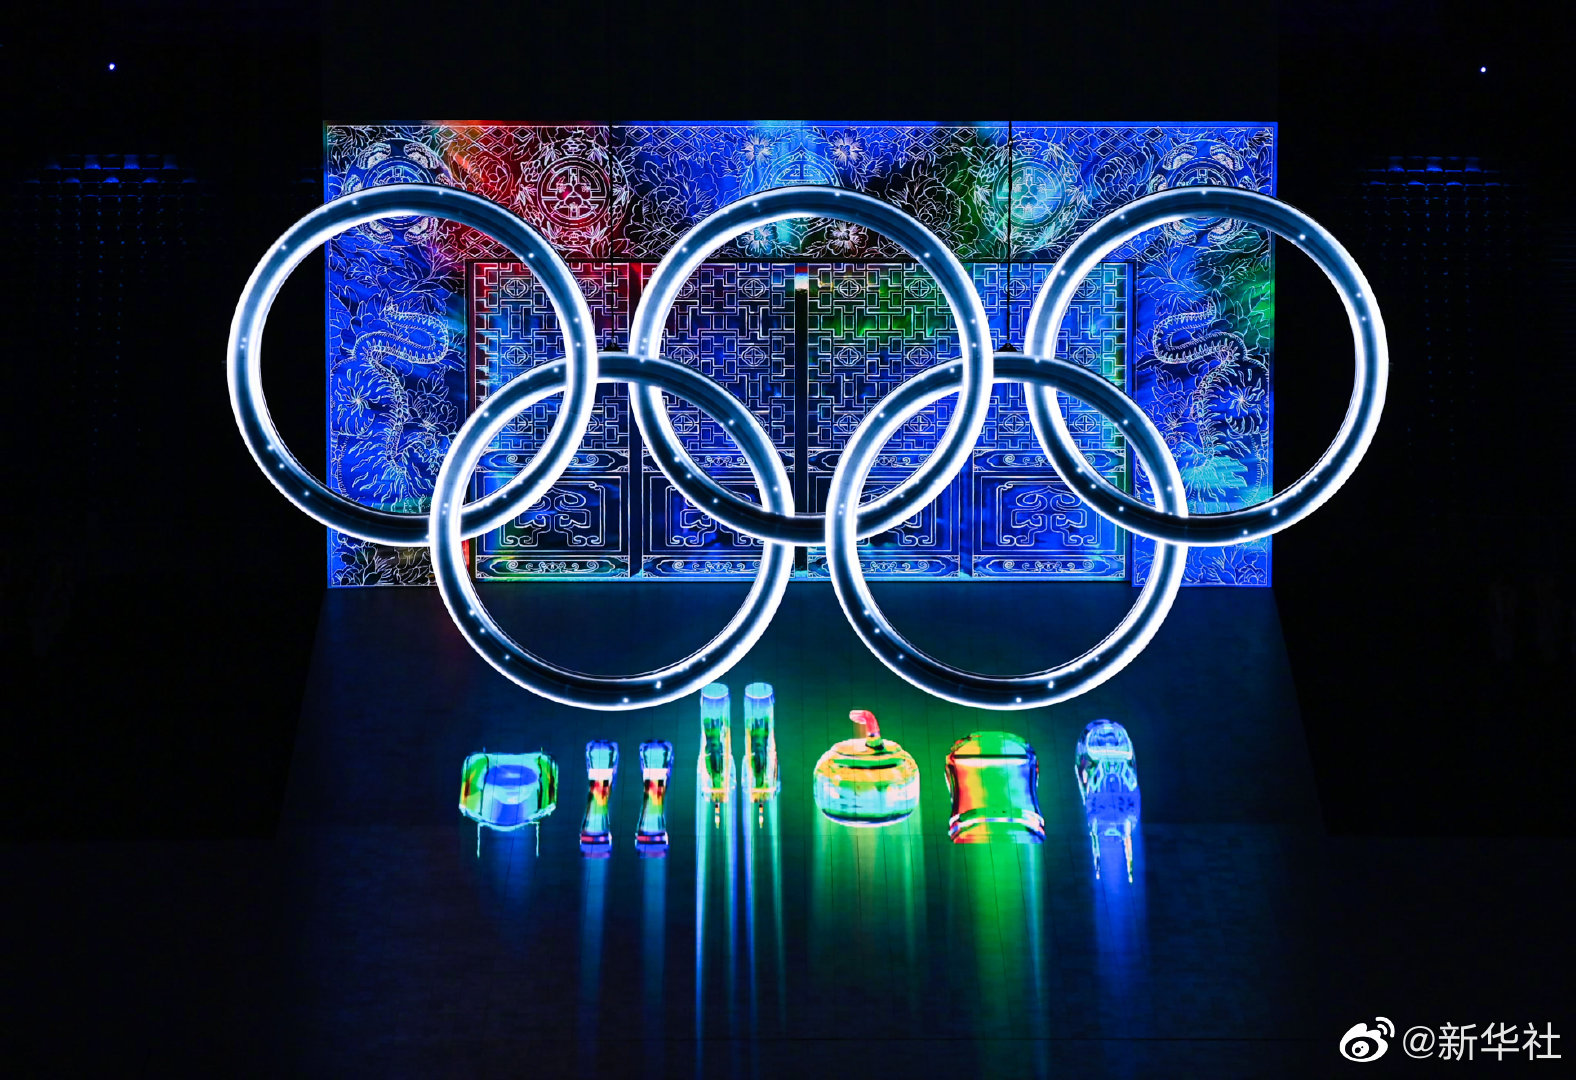 Opening ceremony 2022 beijing beijing olympics